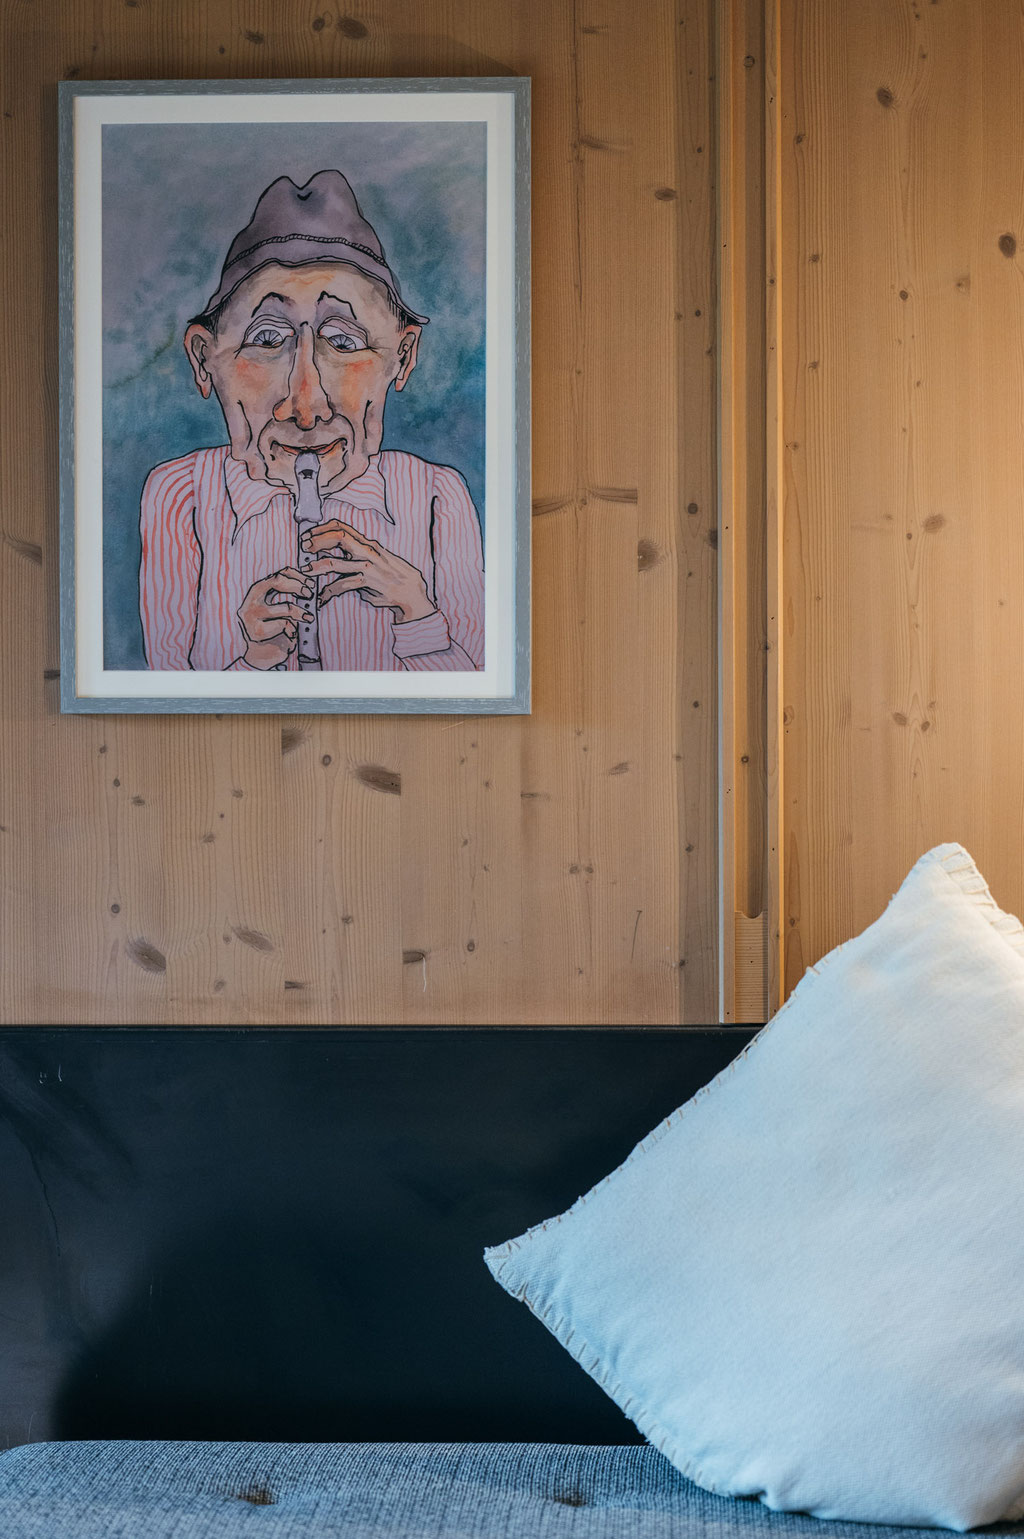 Schönherrhaus, Boutiquehotel Bed&Breakfast + Apartments, Neustift im Stubaital - Tirol #mountainhideaways #hotelstory ©MarikaUnterladstaetter